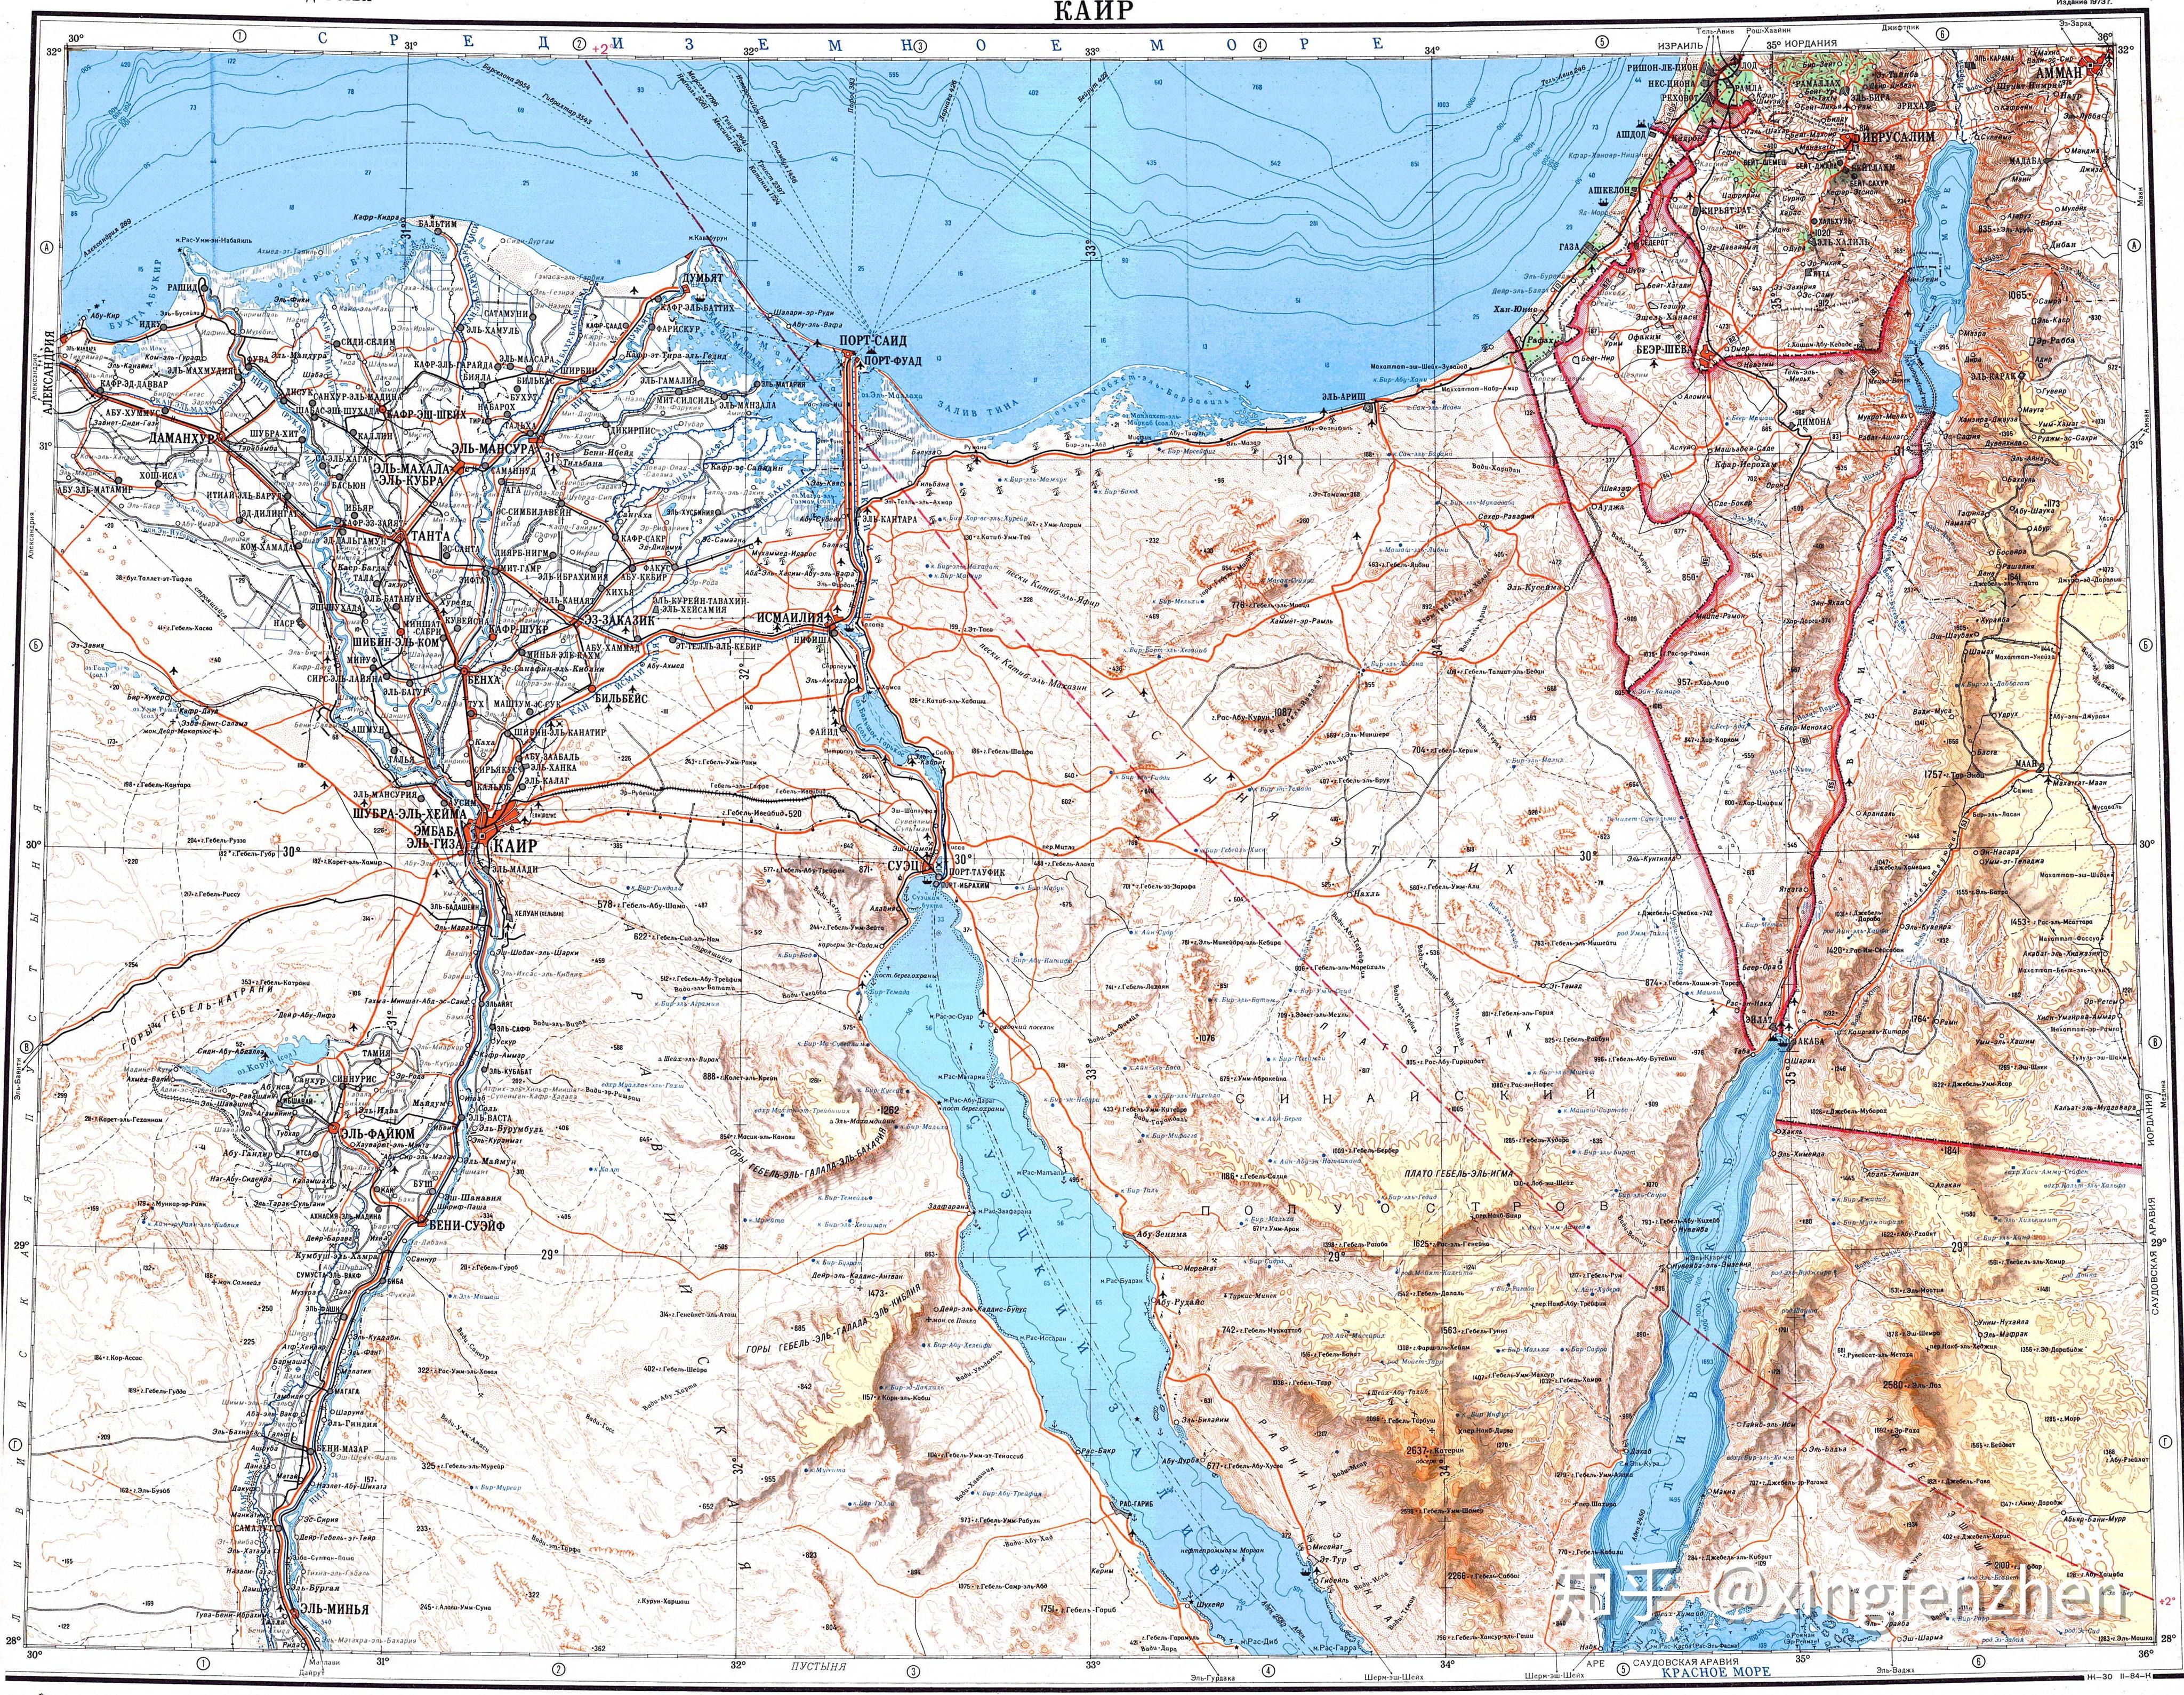 这是1973年的尼罗河三角洲,西奈沙漠和以色列南部